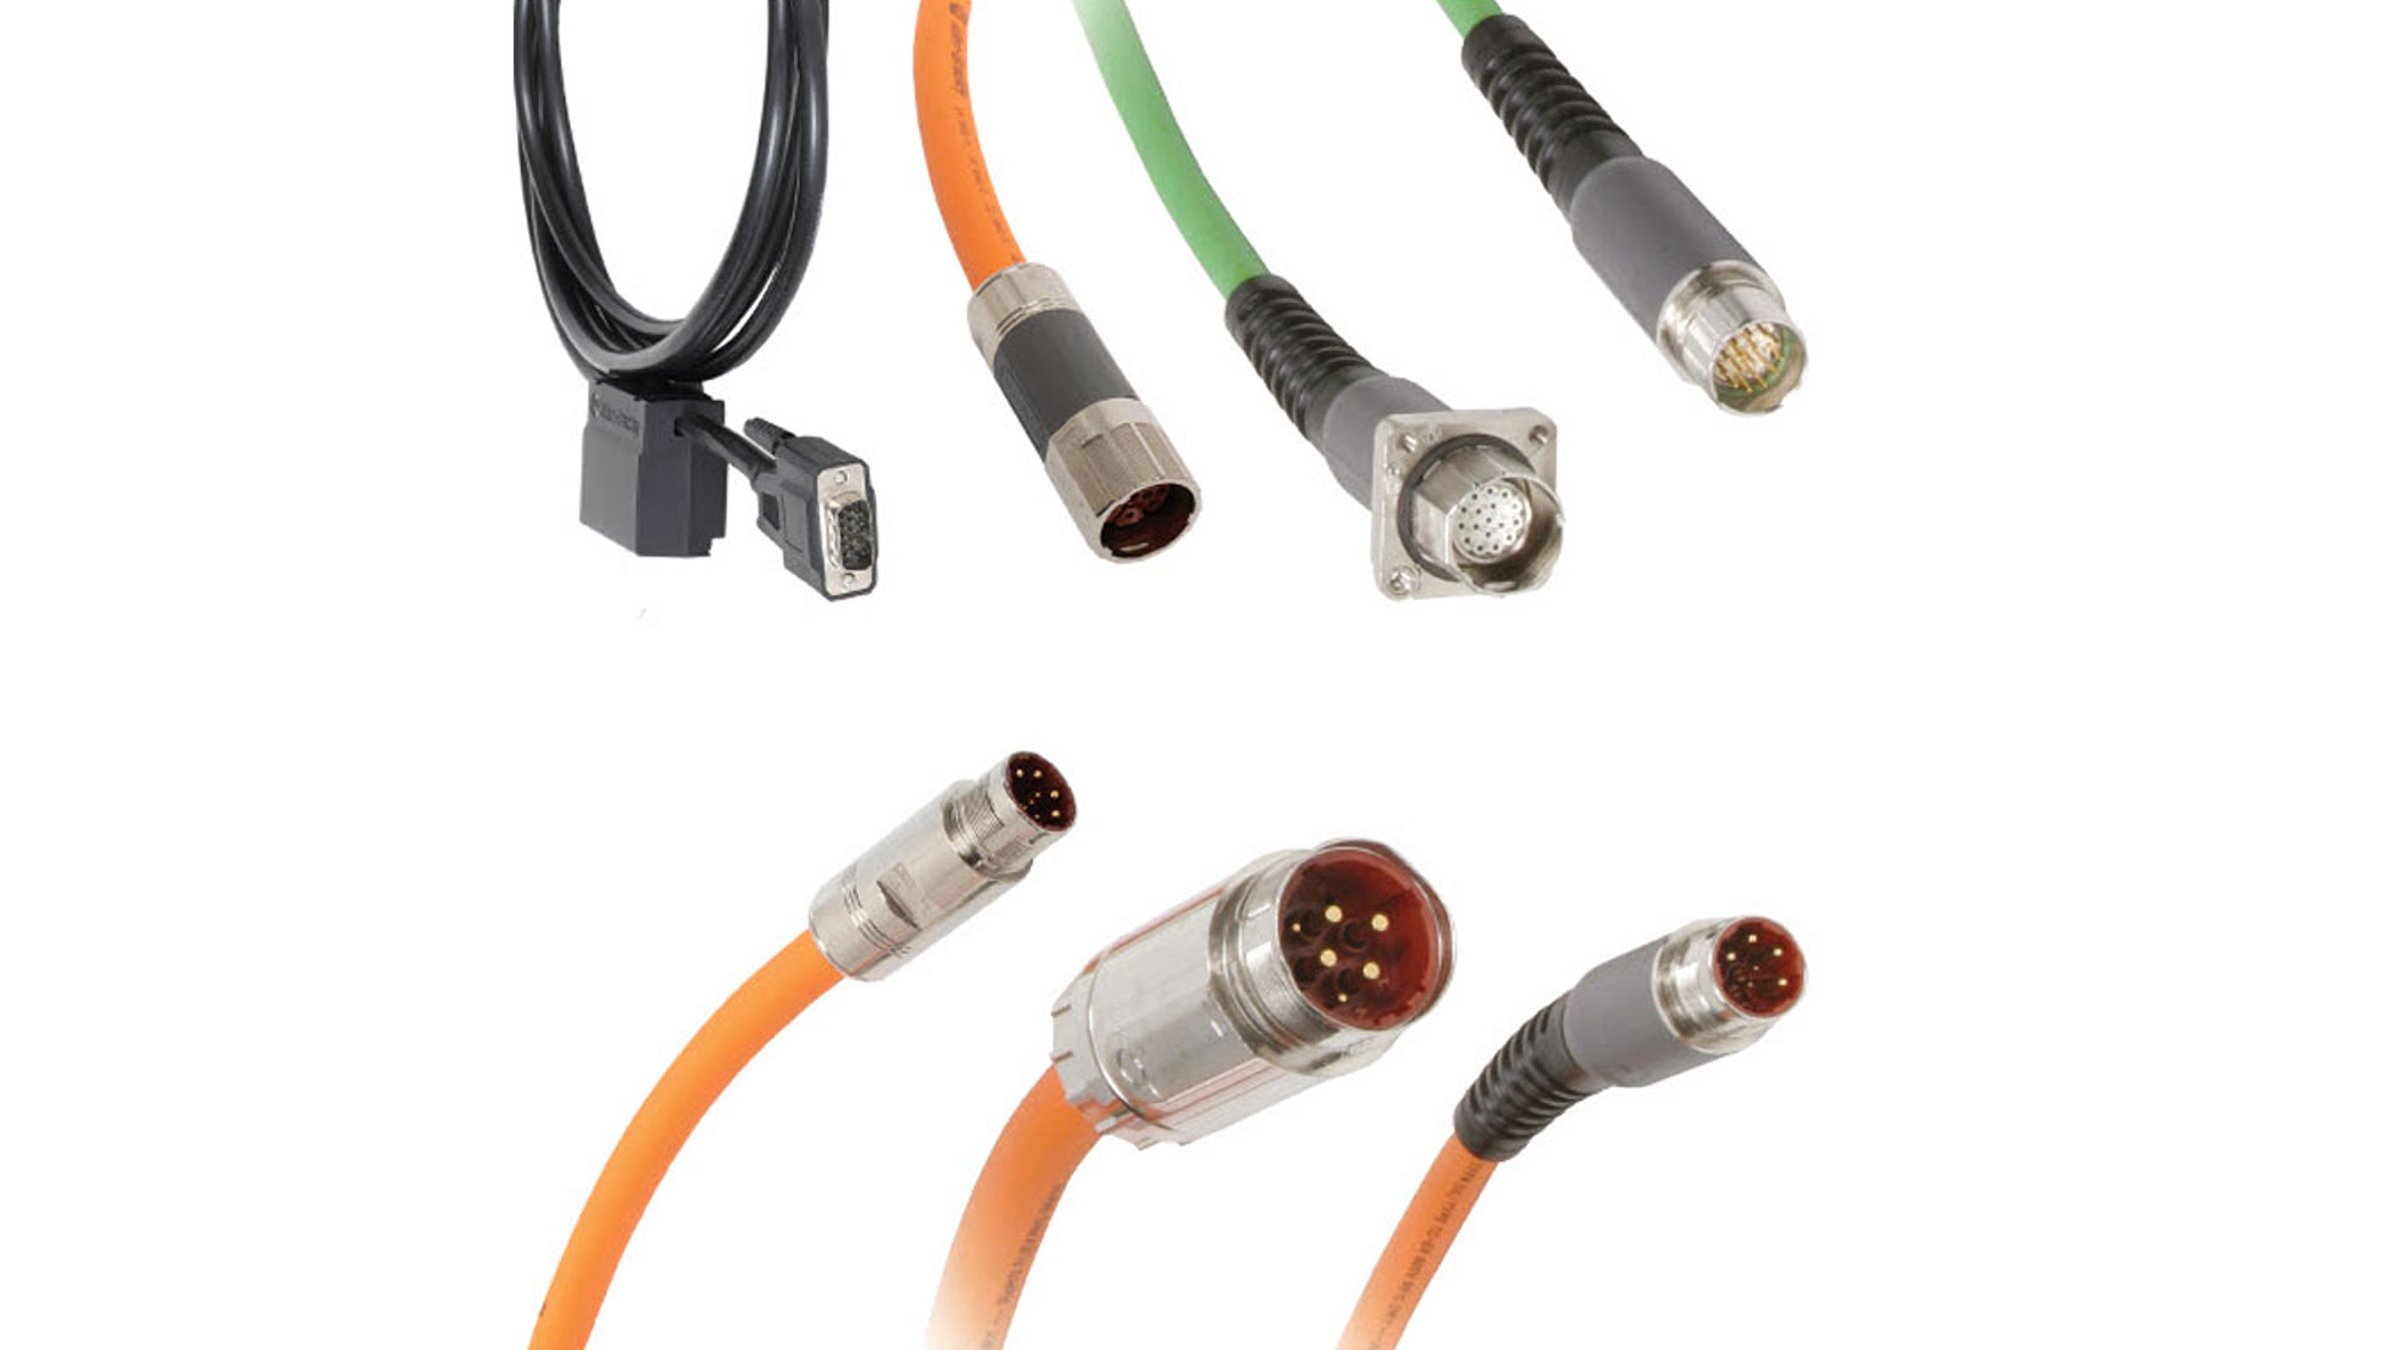 Os cabos Kinetix® cód. cat. 2090 da Allen-Bradley são uma família completa de cabos flexíveis padrão e contínuos, equipados com conectores DIN SpeedTEC® para uma conexão rápida de um quarto de volta.